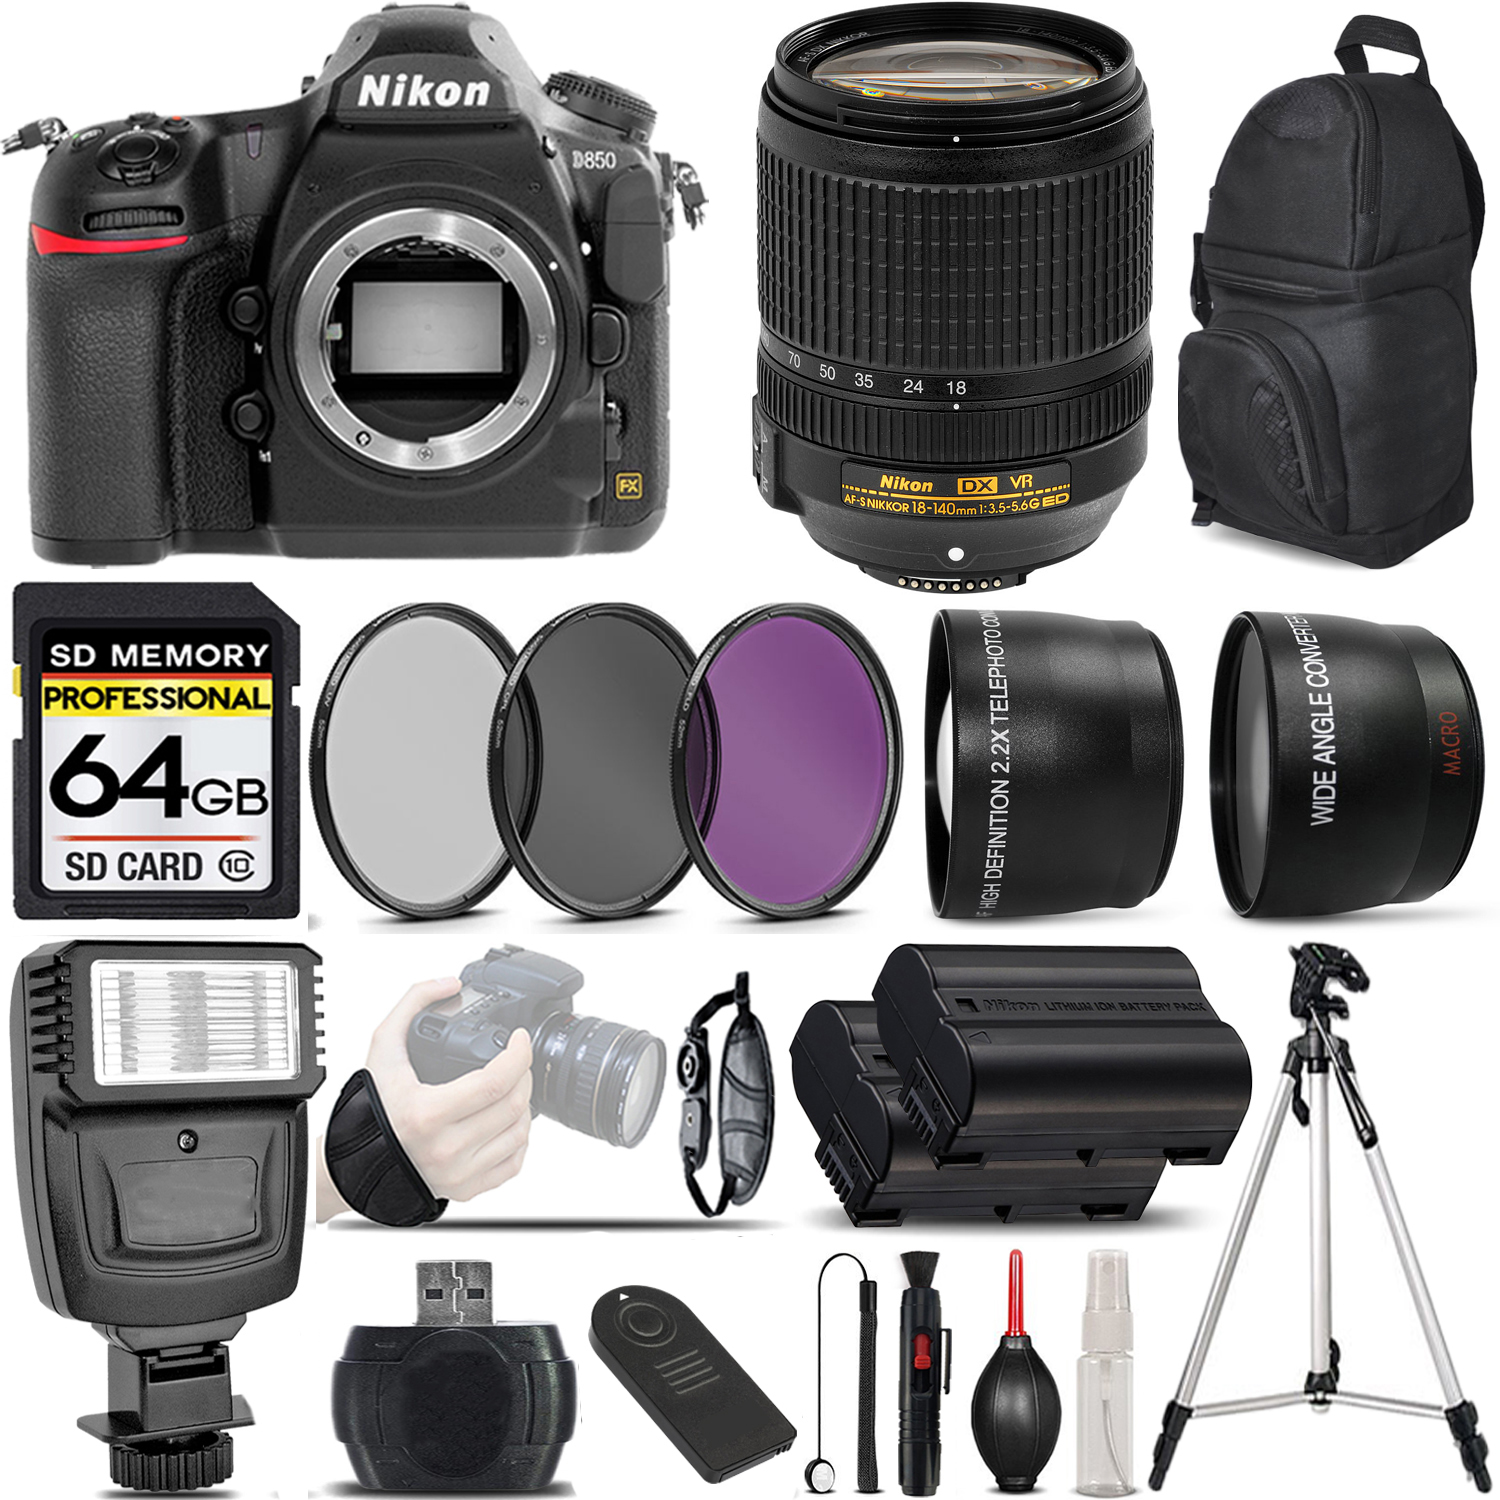 D850 DSLR Camera + 18-140mm VR AF-S Lens + 3 Piece Filter Set + 64GB Savings Bundle *FREE SHIPPING*